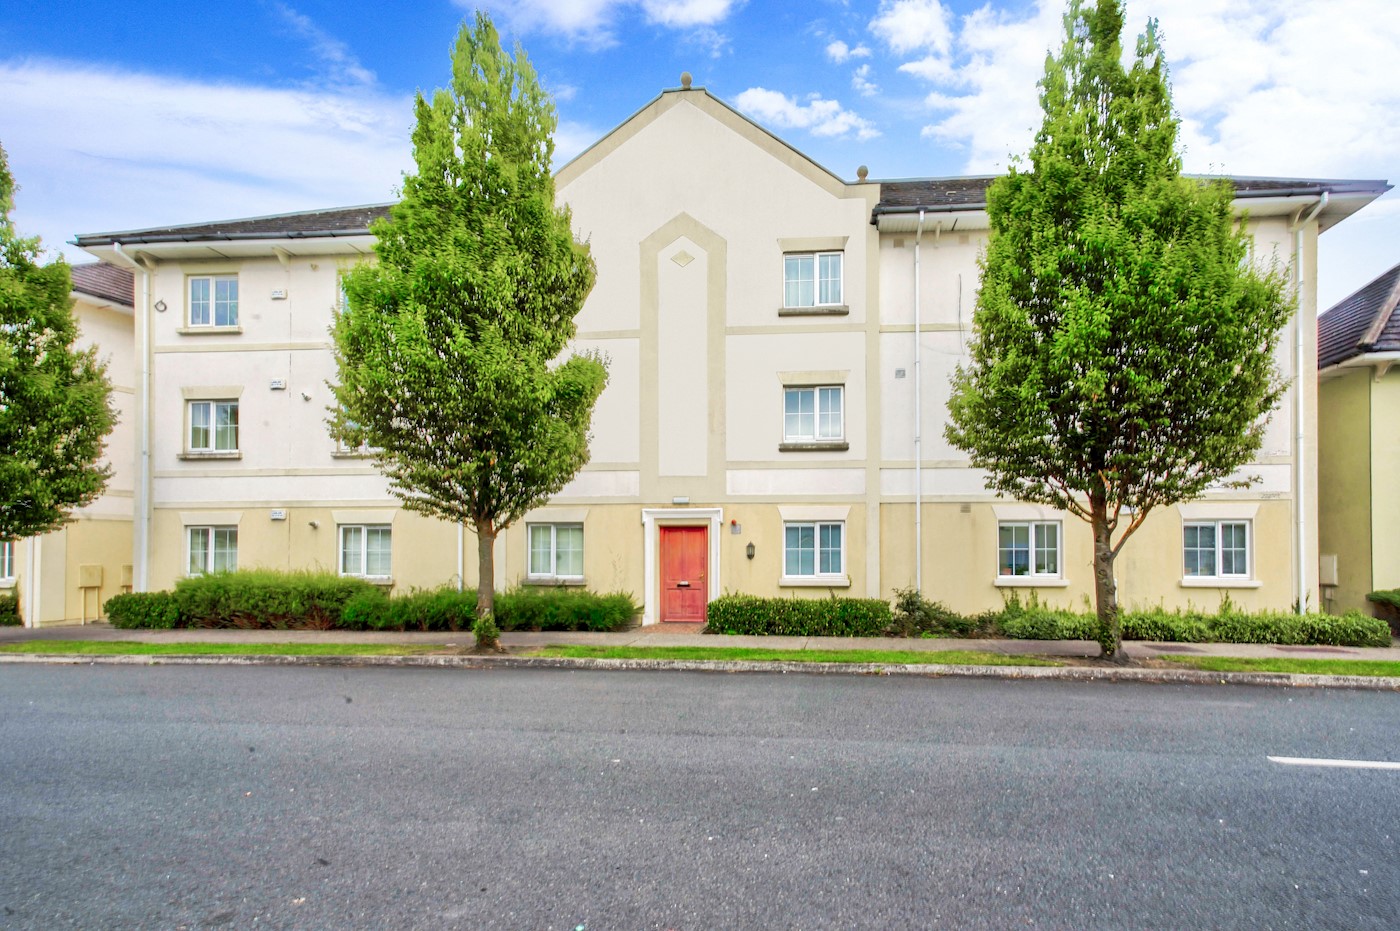 Apartment 15, De Vesci Court, Fairgreen, Portlaoise, Co. Laois, R32 TH22 1/8